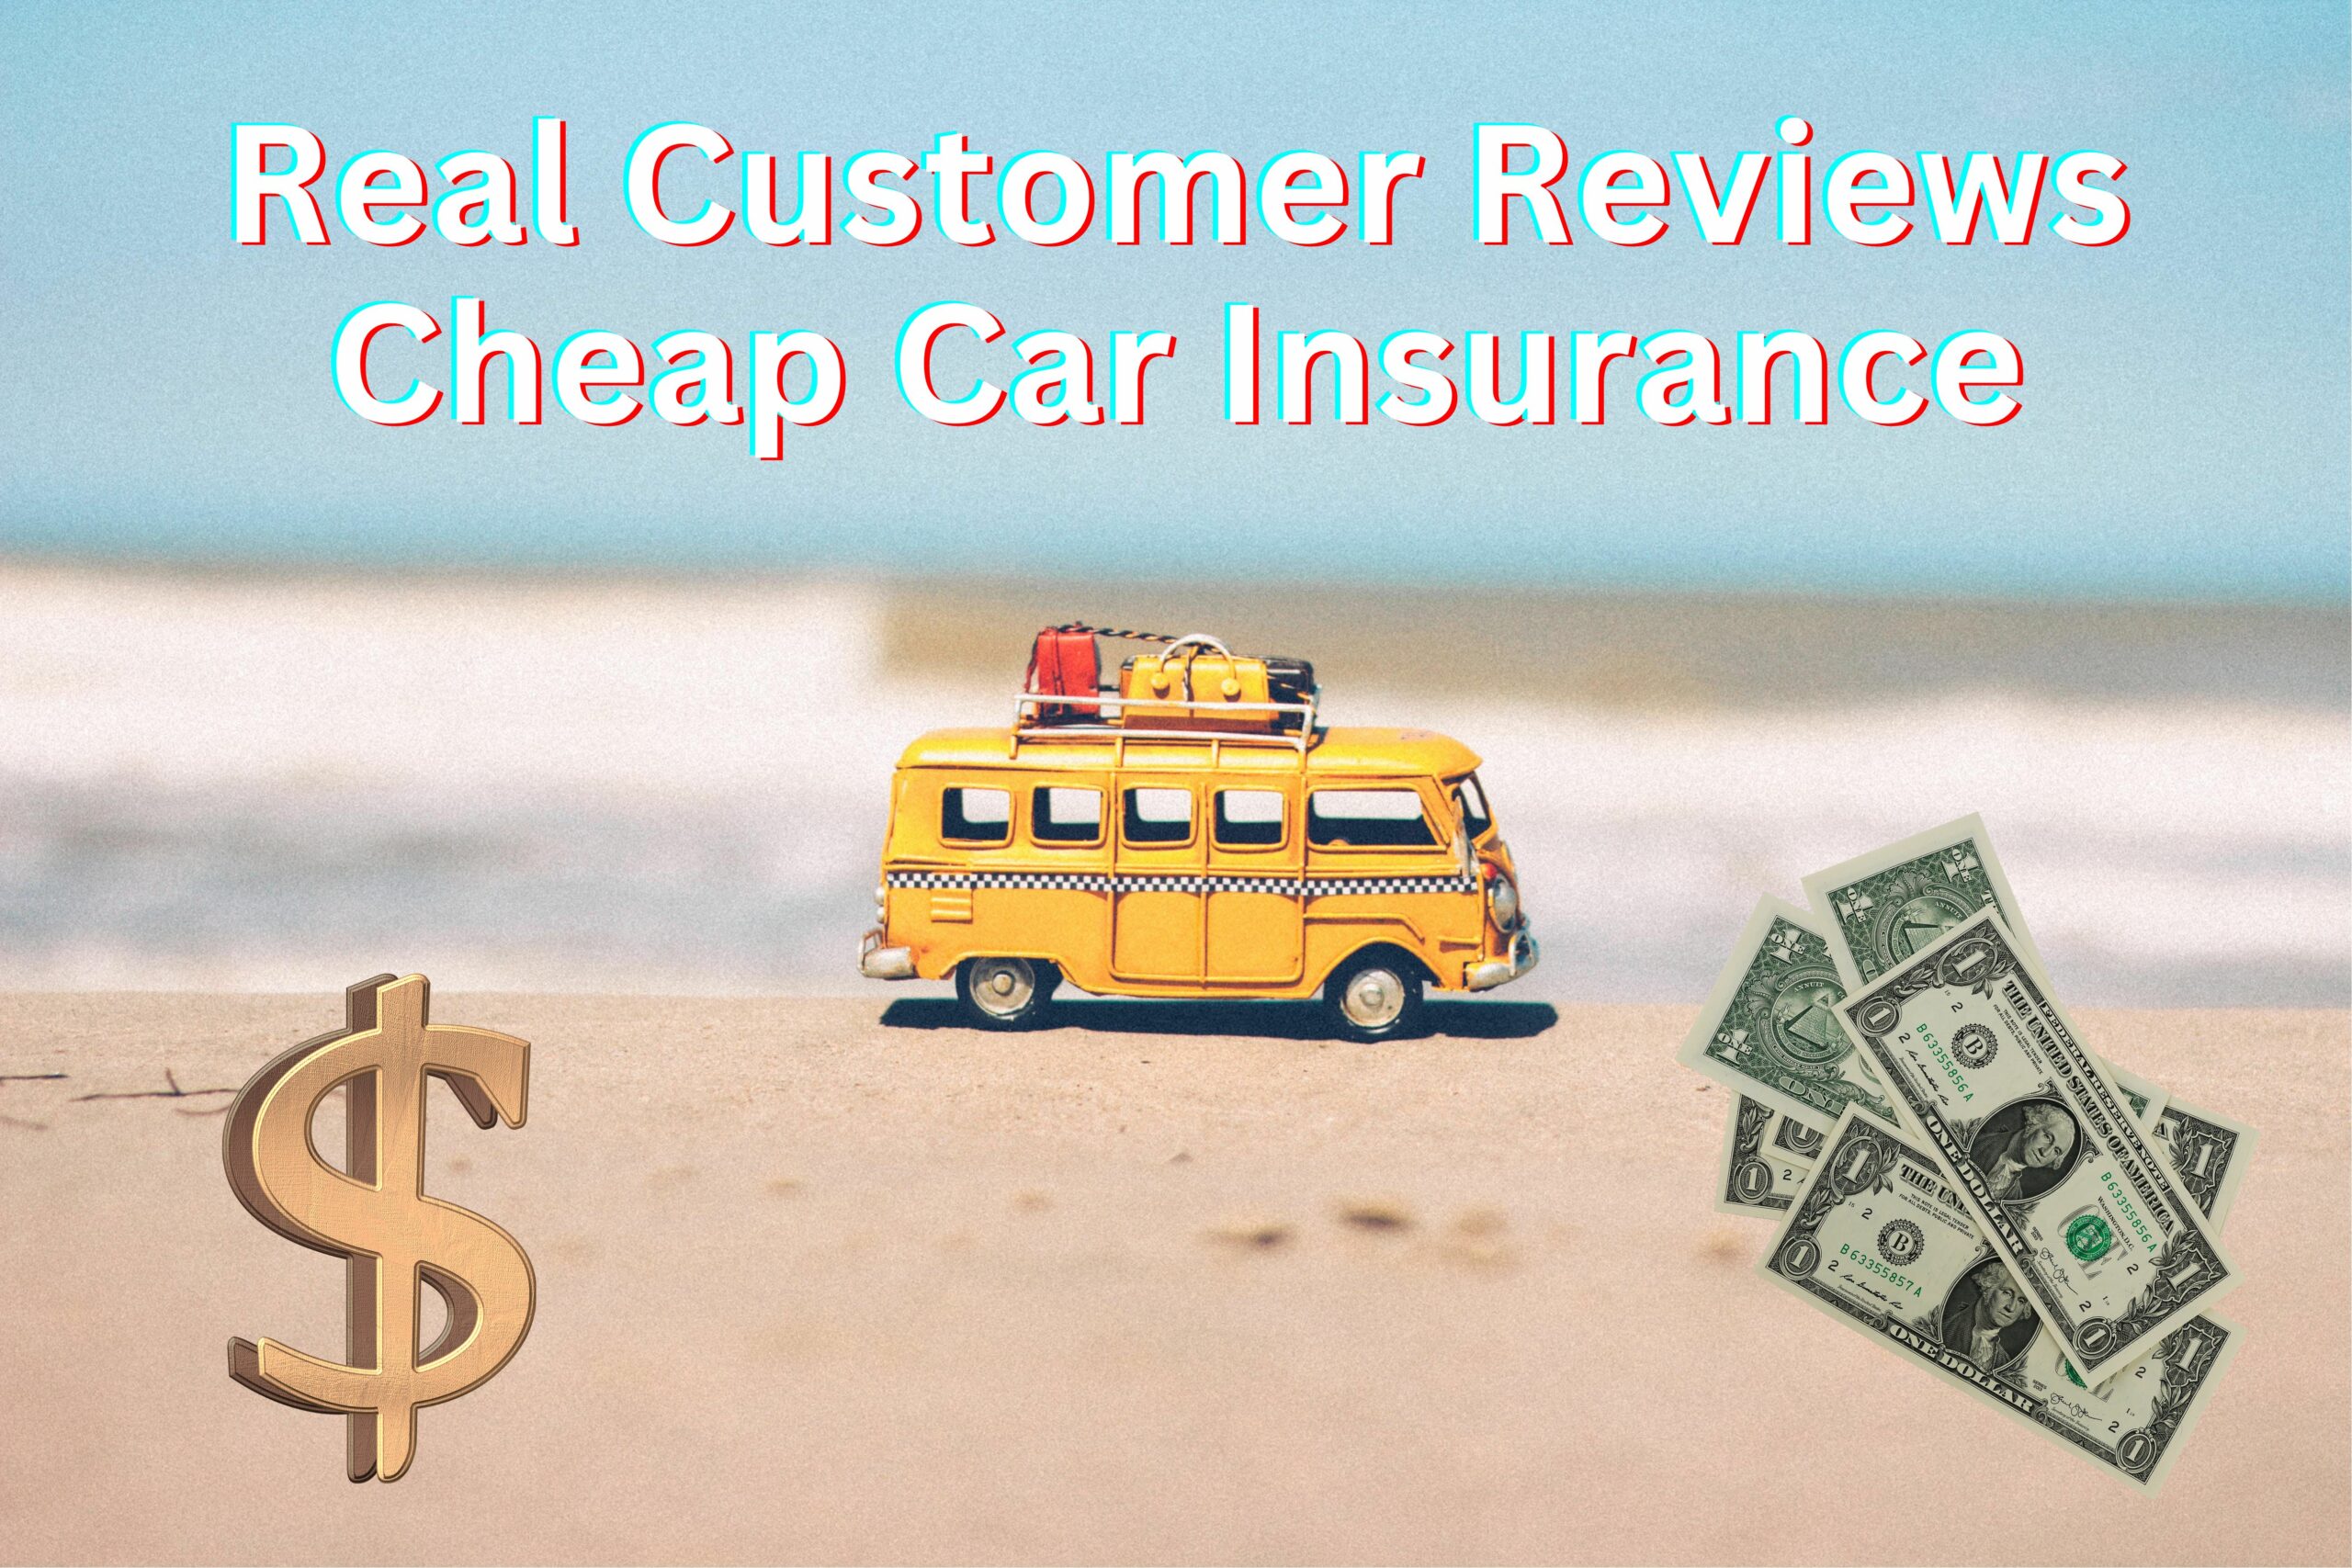 Real Customer Reviews: Cheap Car Insurance